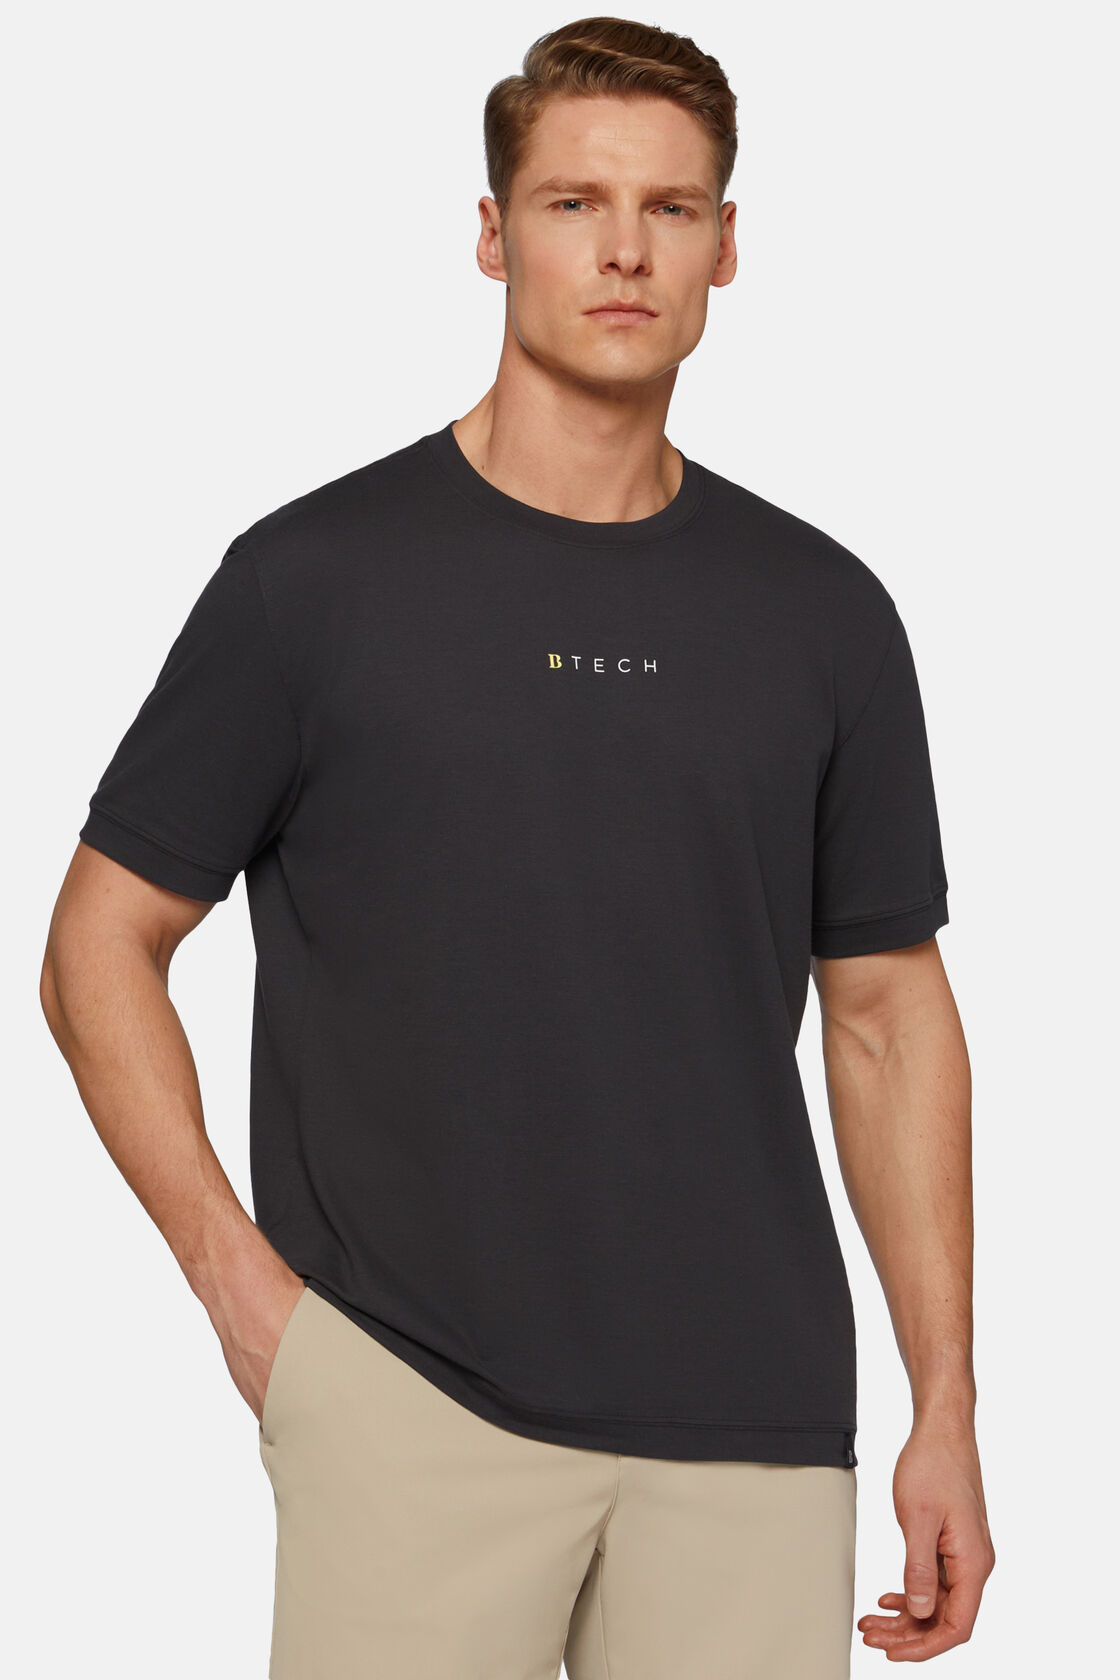 Camiseta de piqué de alto rendimiento, Negro, hi-res